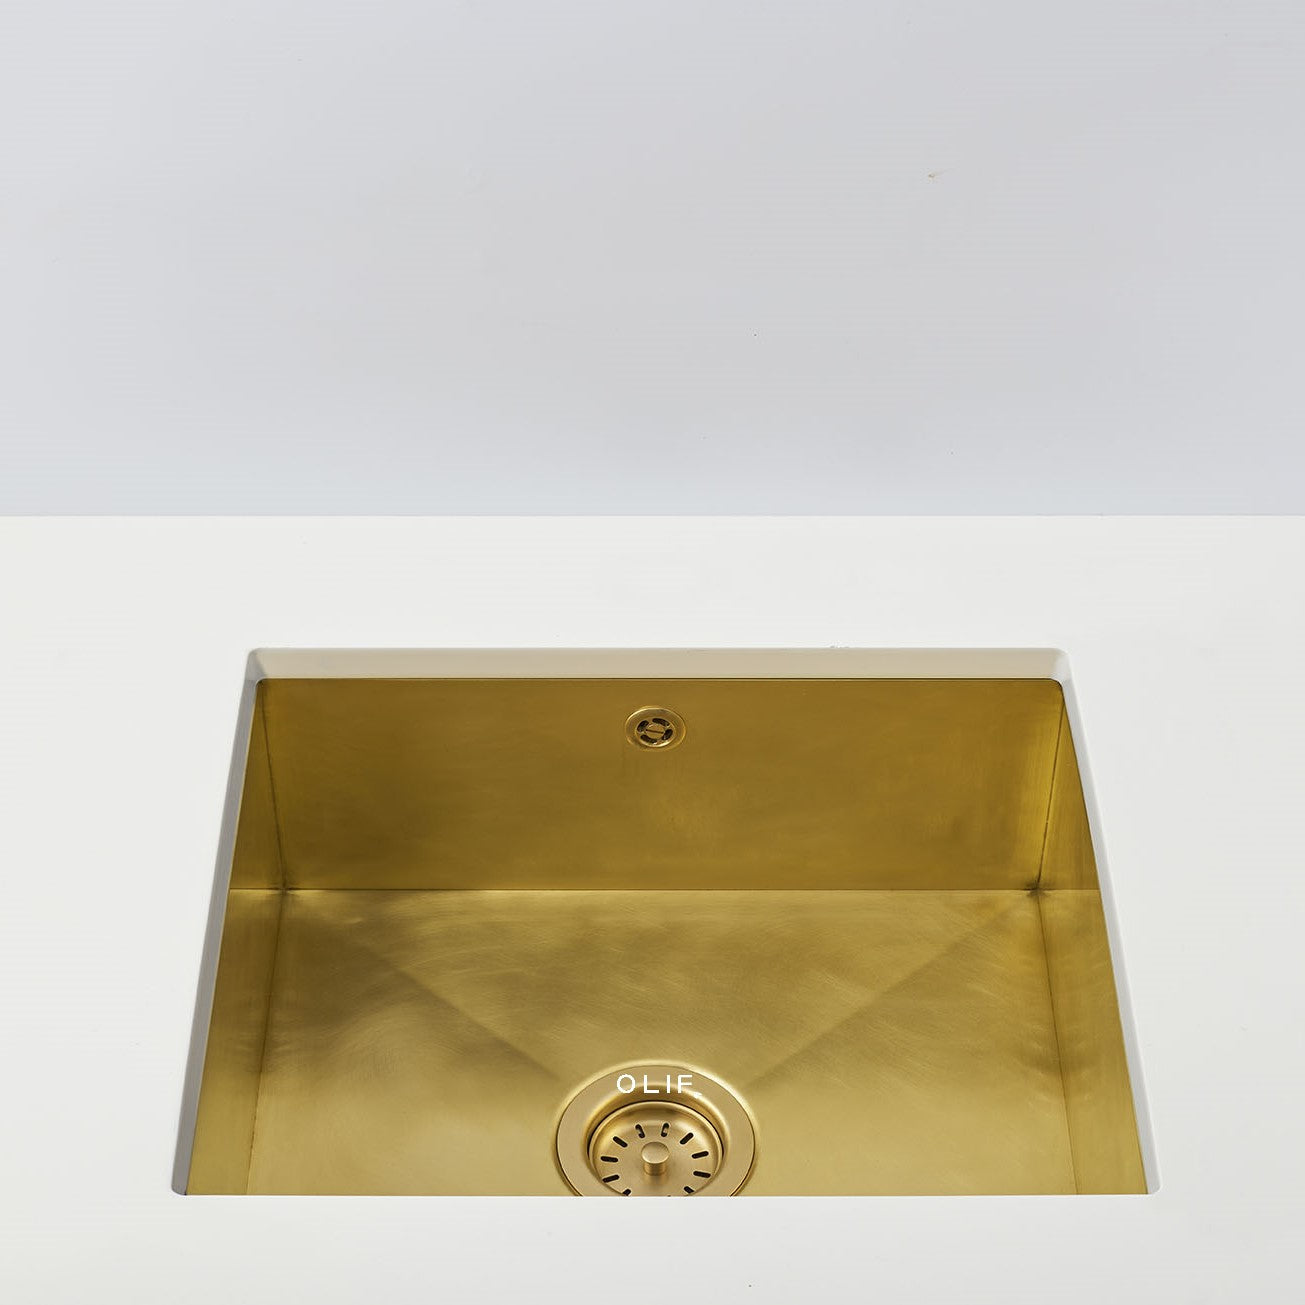 Solid Brass 500/400 kitchen sink, undermount or topmount